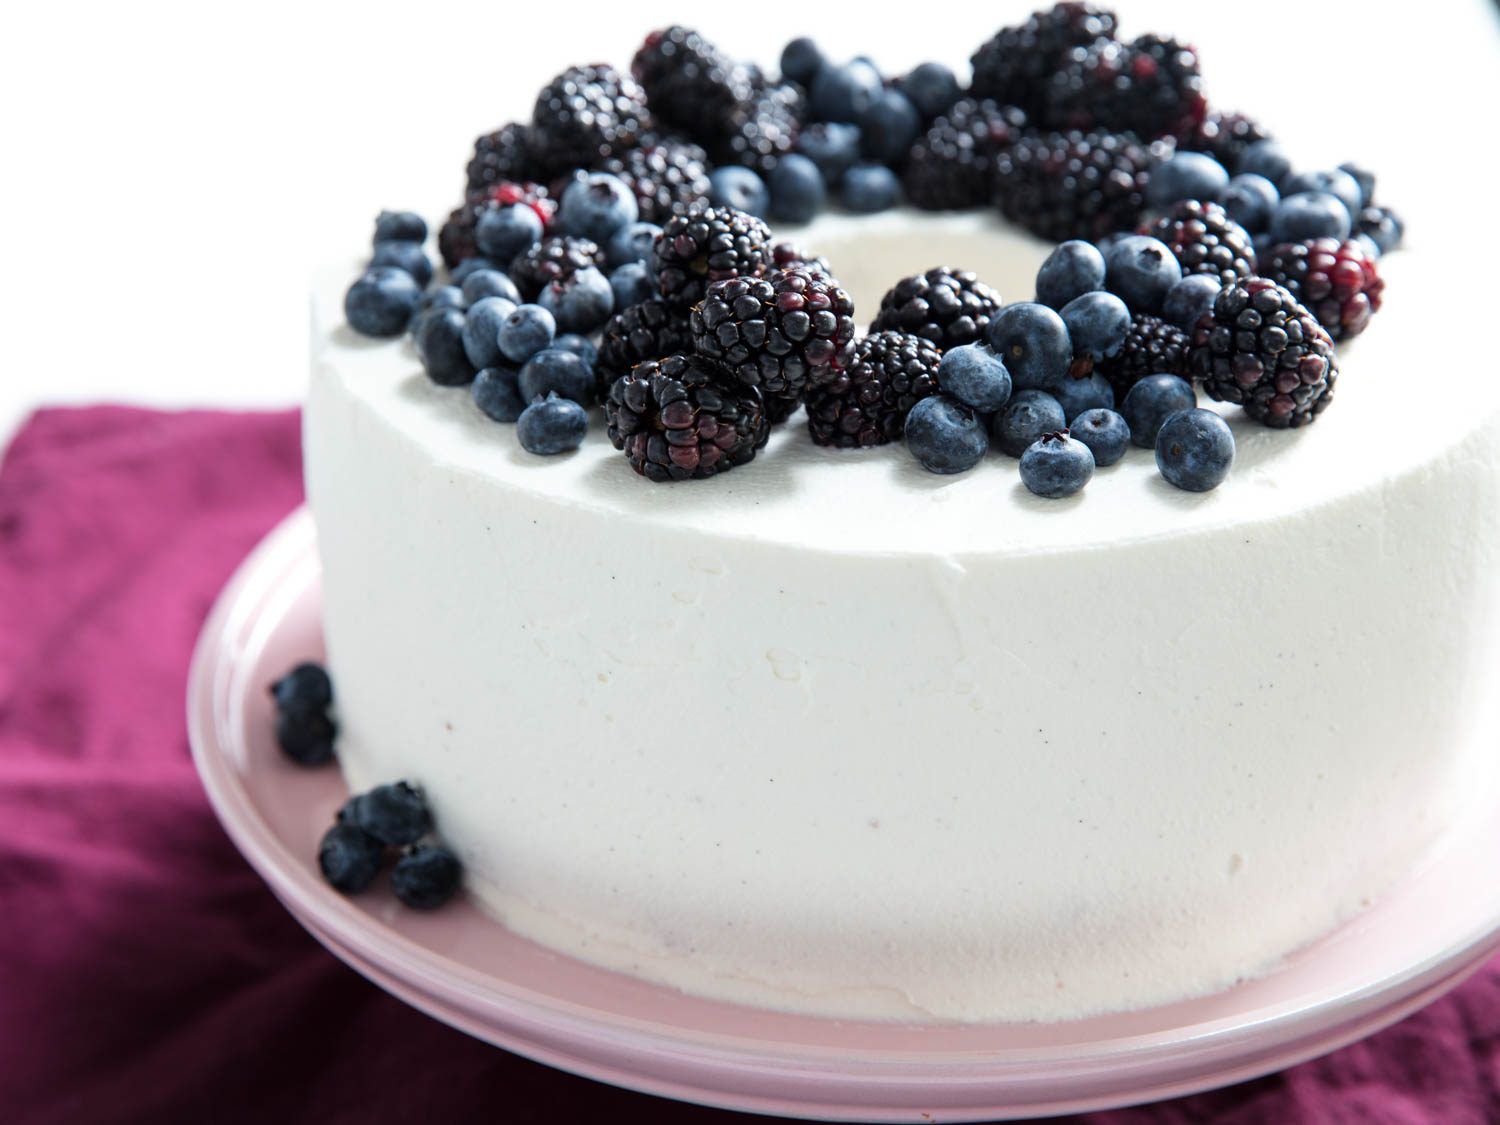 雪风蛋糕上撒上尚蒂伊奶油，上面点缀着新鲜的蓝莓和黑莓。gydF4y2Ba